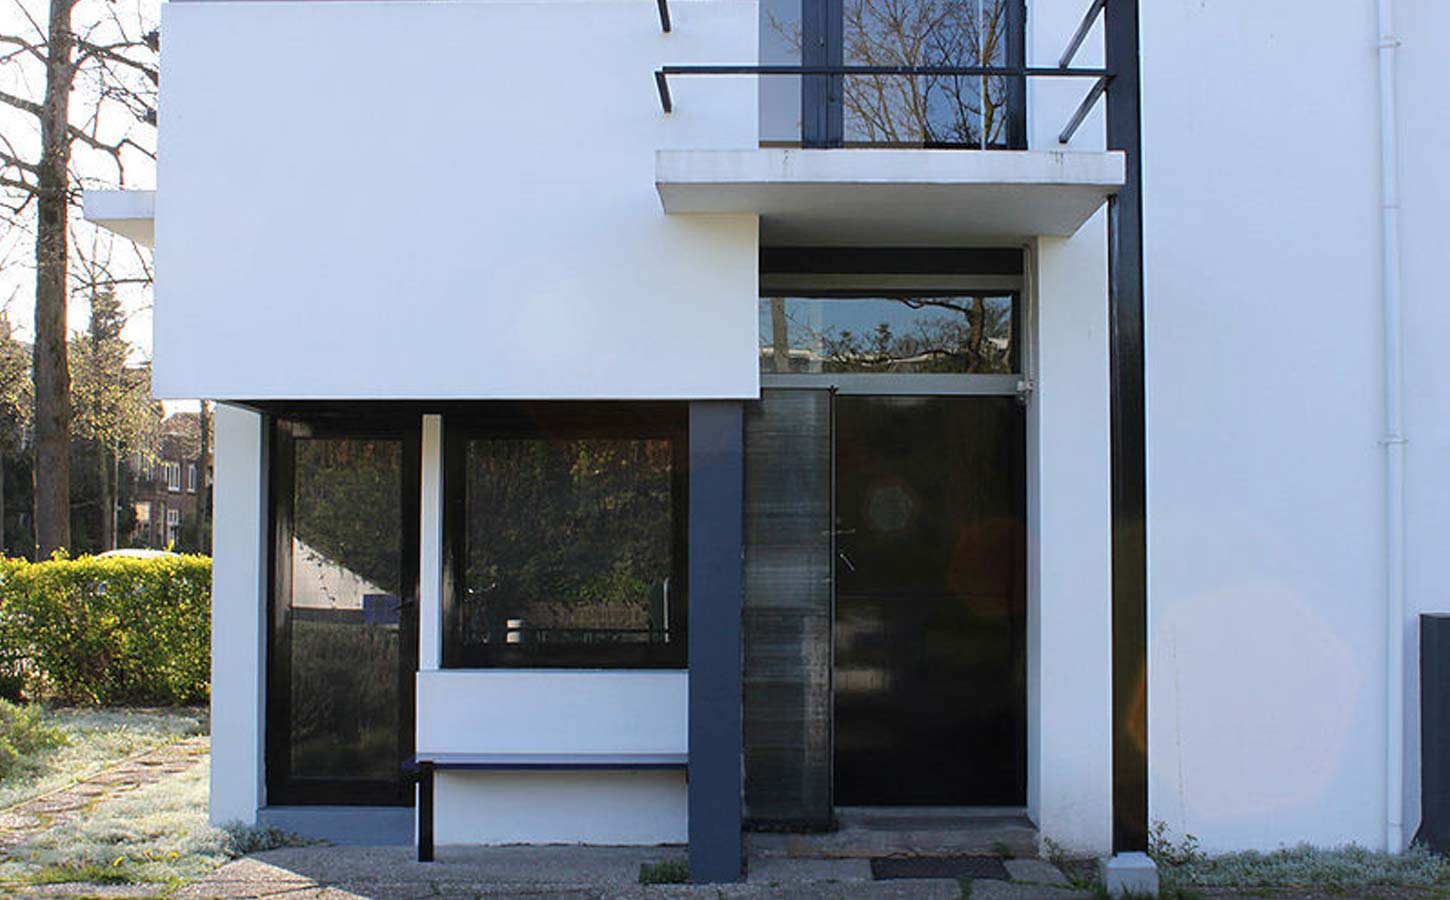 rietveld schroder house exterior elevation